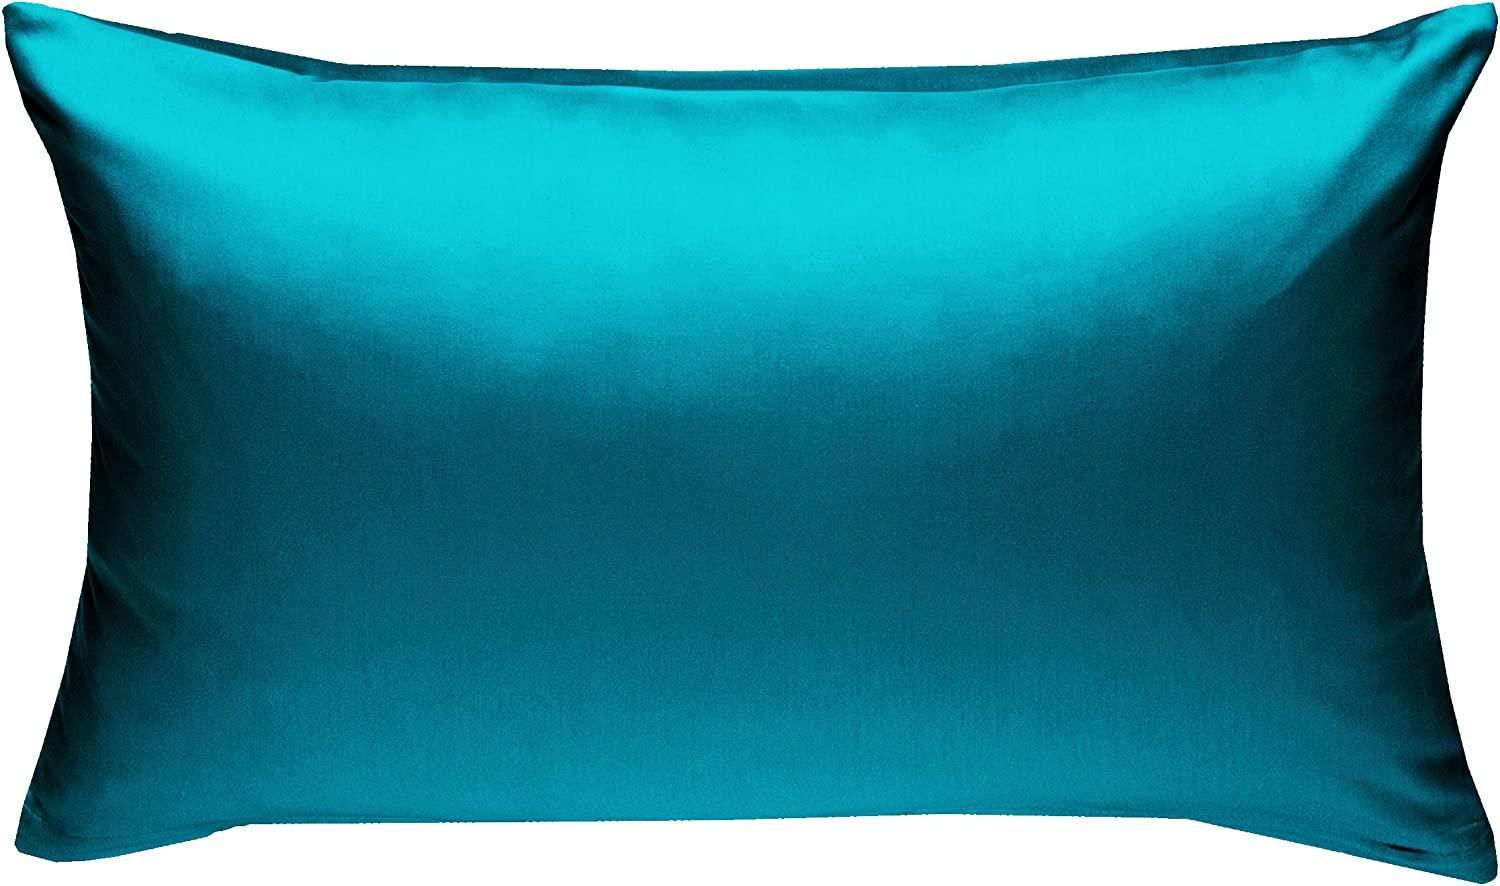 Bettwaesche-mit-Stil Mako-Satin / Baumwollsatin Bettwäsche uni / einfarbig petrol blau Kissenbezug 50x70 cm Bild 1